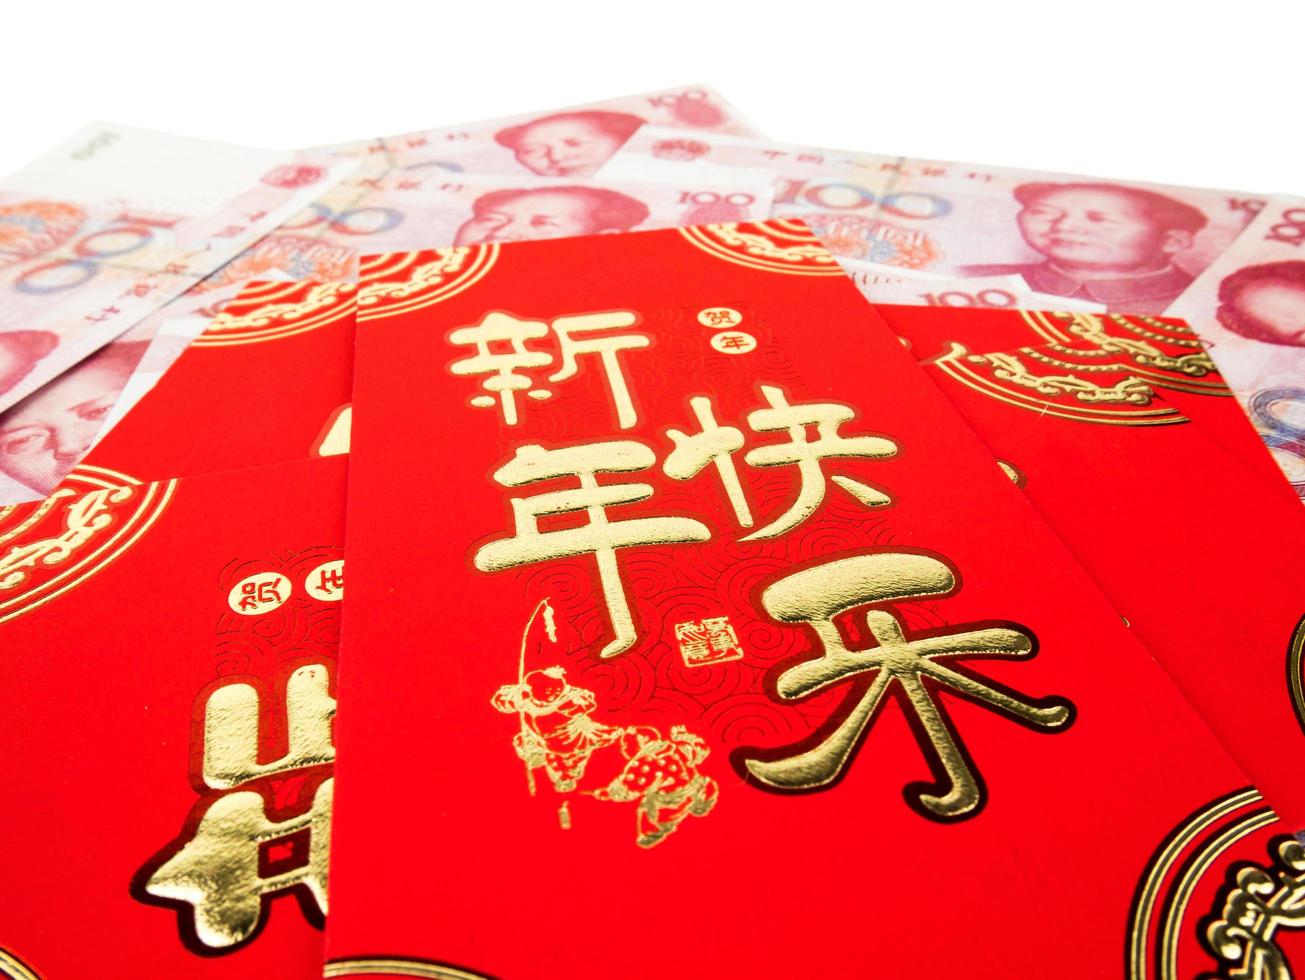 kinesiska röda kuvert över kinesiska pengar hundra yuan sedlar hög hög isolerad på vit bakgrund. kinesisk text på kuvert som betyder gott kinesiskt nytt år foto